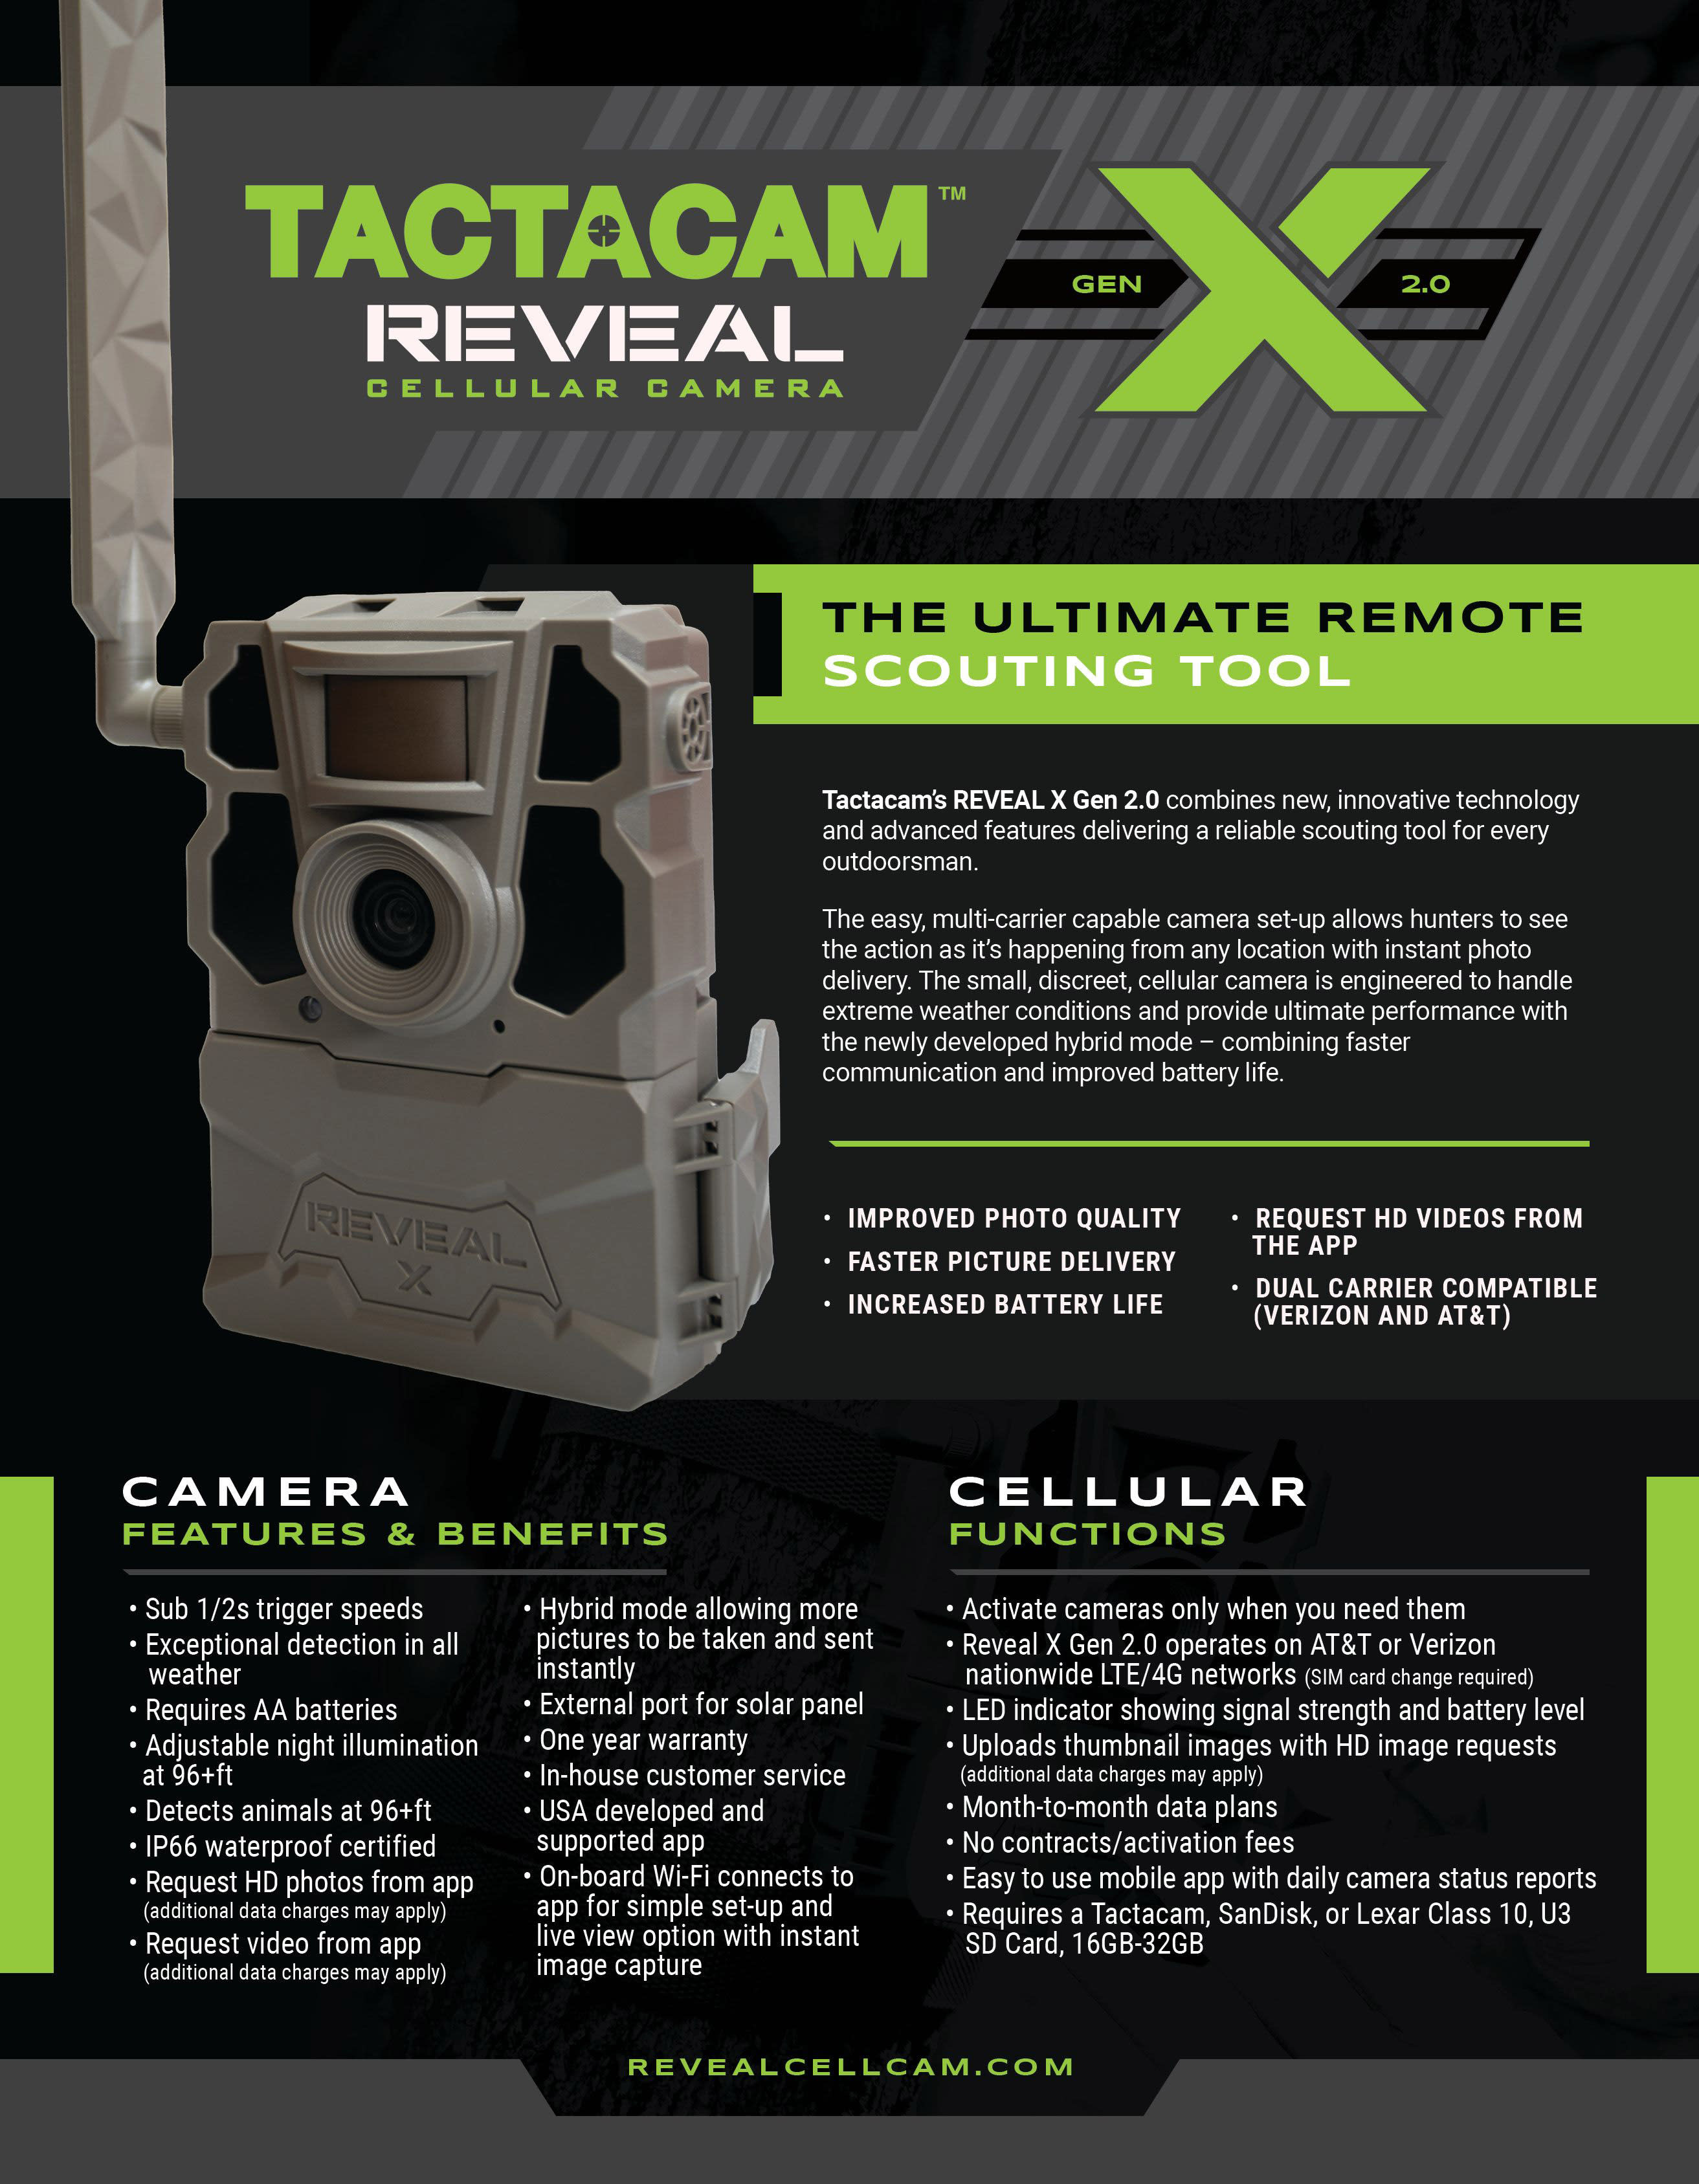 Tactacam™ REVEAL X Gen 2.0 Cellular Trail Camera